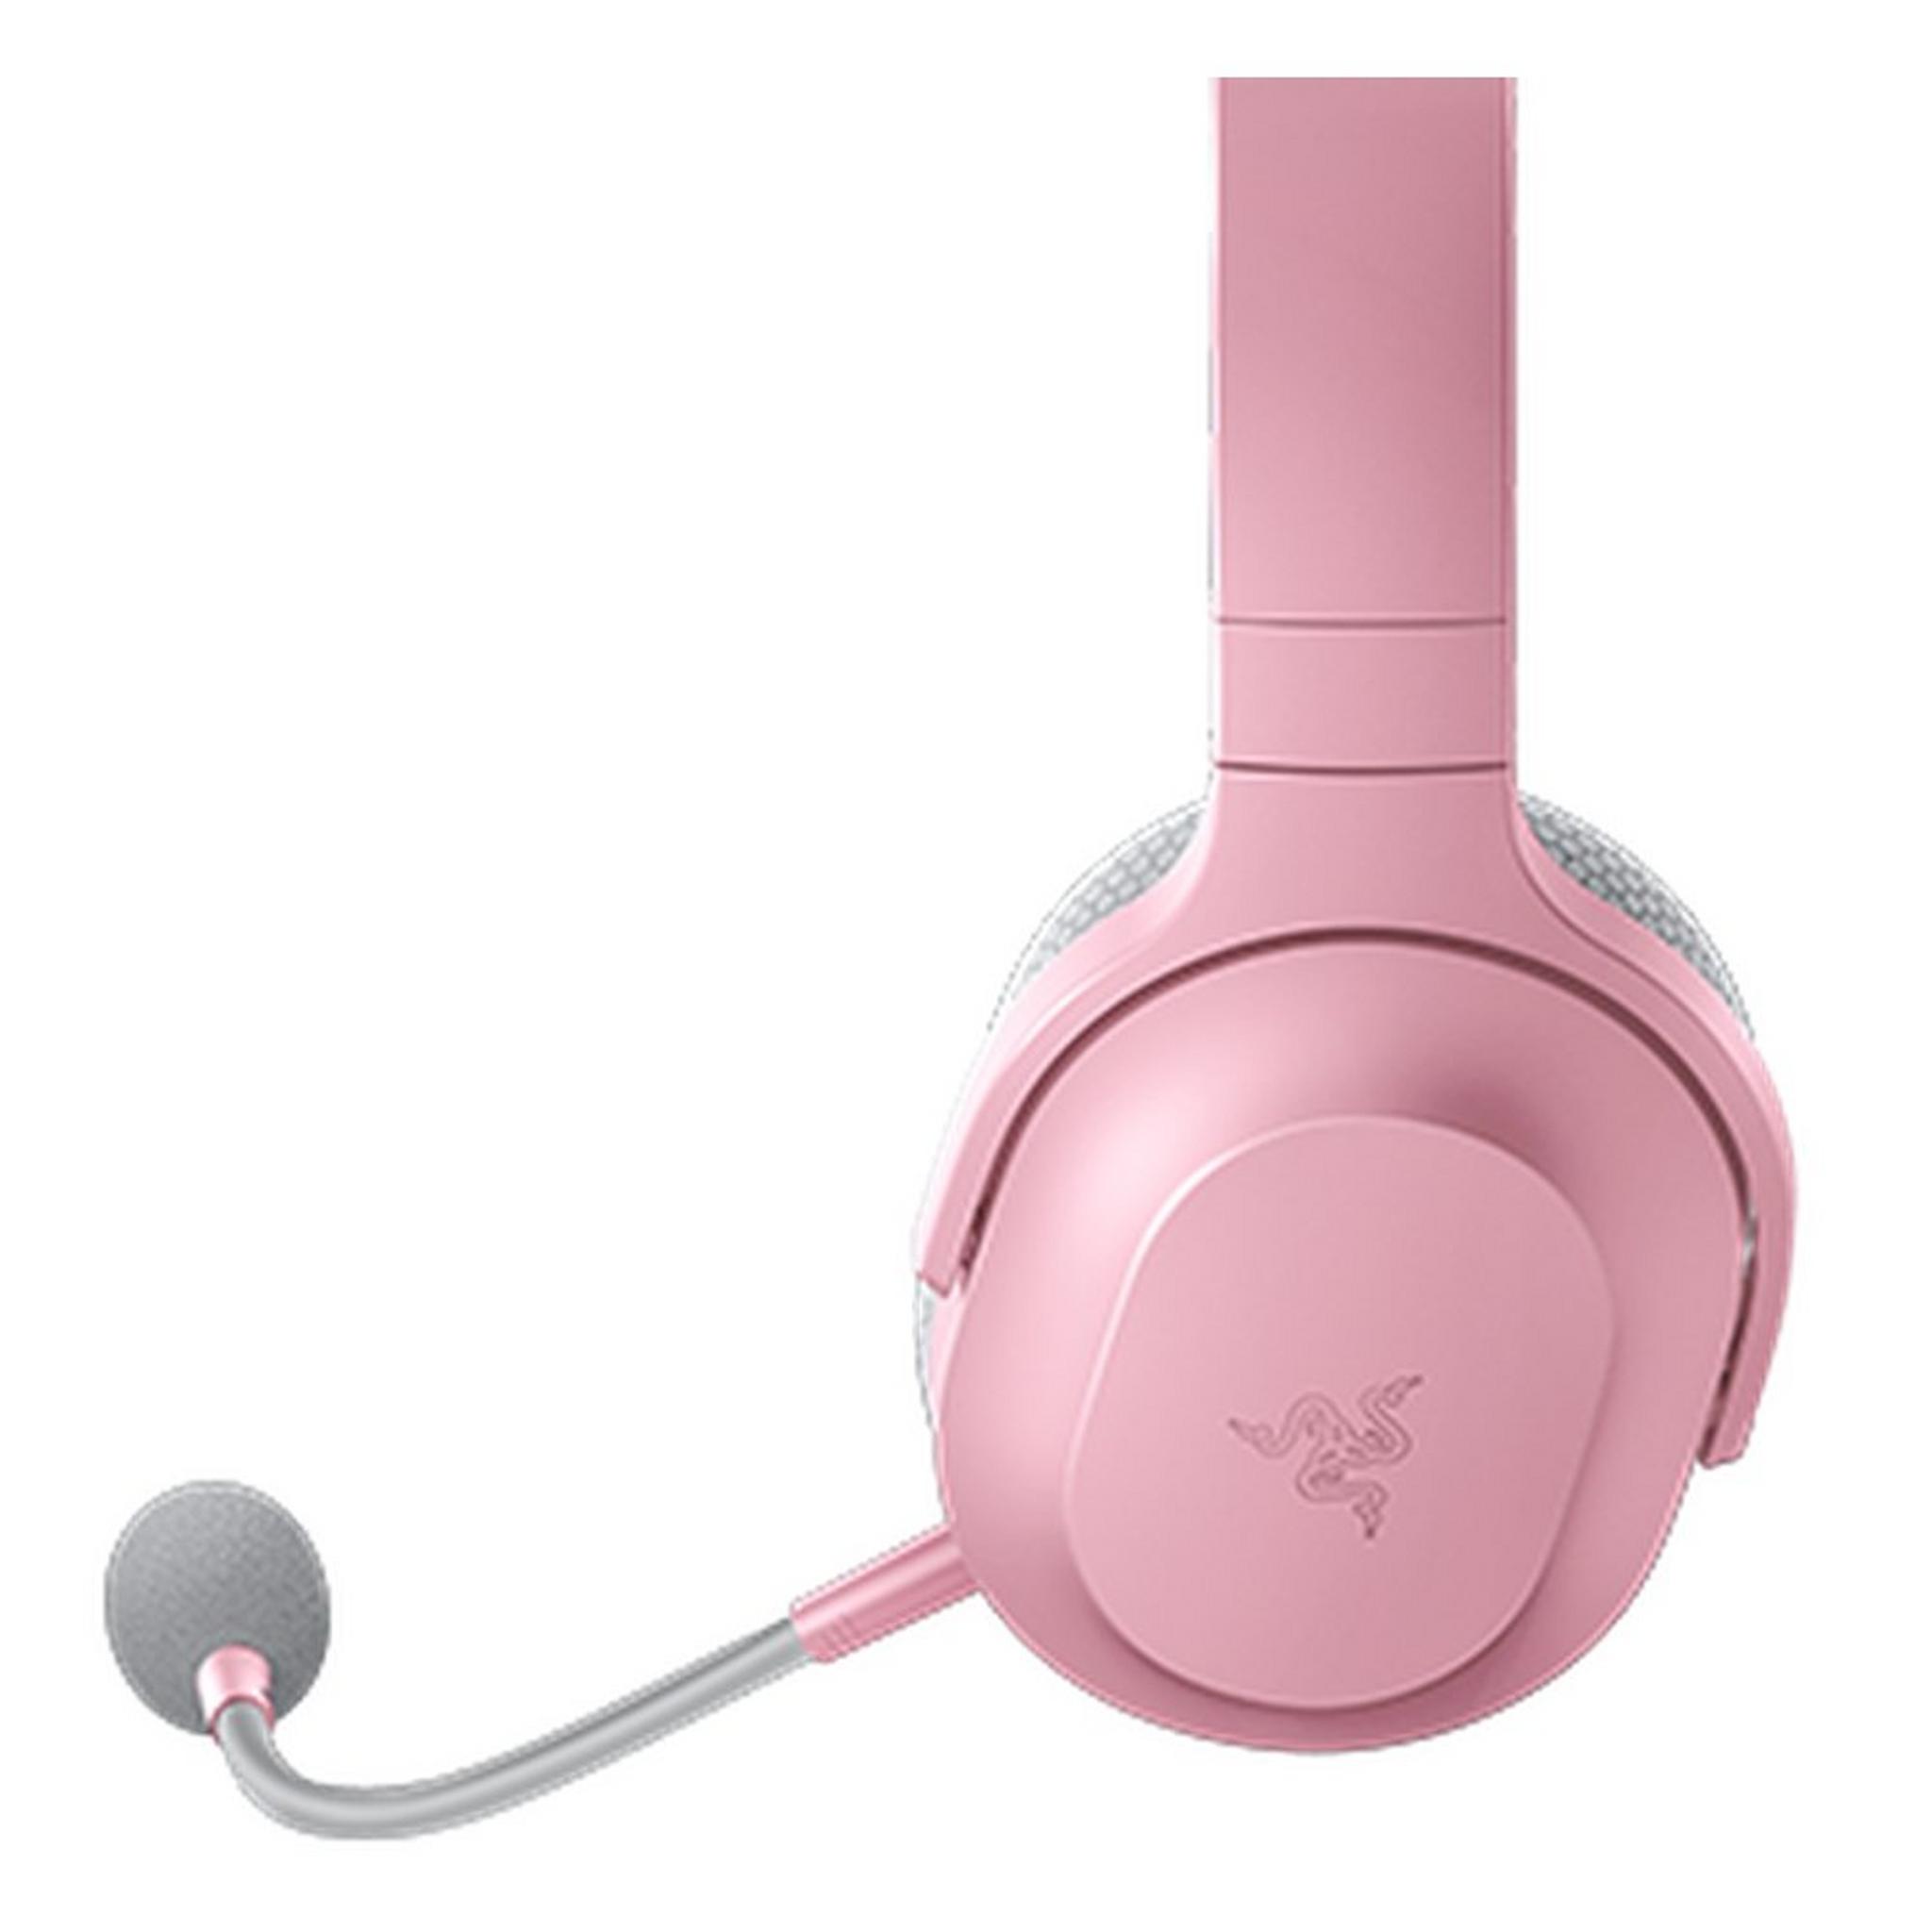 Razer Barracuda X Wireless Headset Pink